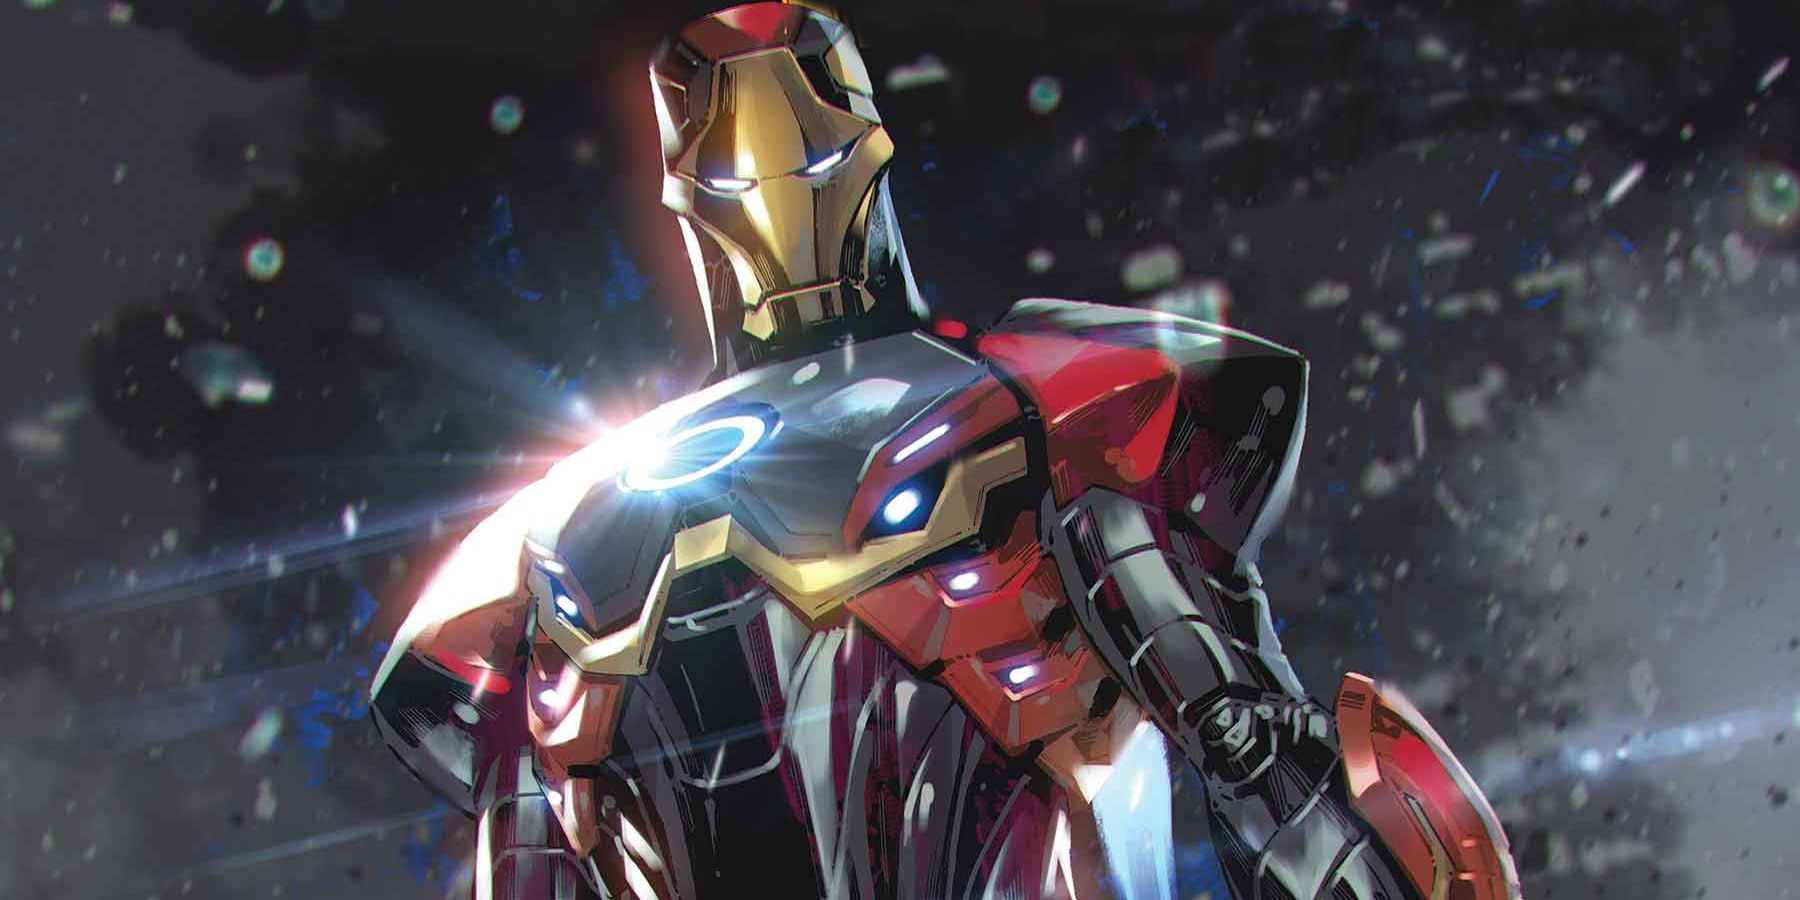 “El ataúd más avanzado del mundo”: la nueva armadura ultraavanzada de Iron Man se vuelve oficialmente en su contra